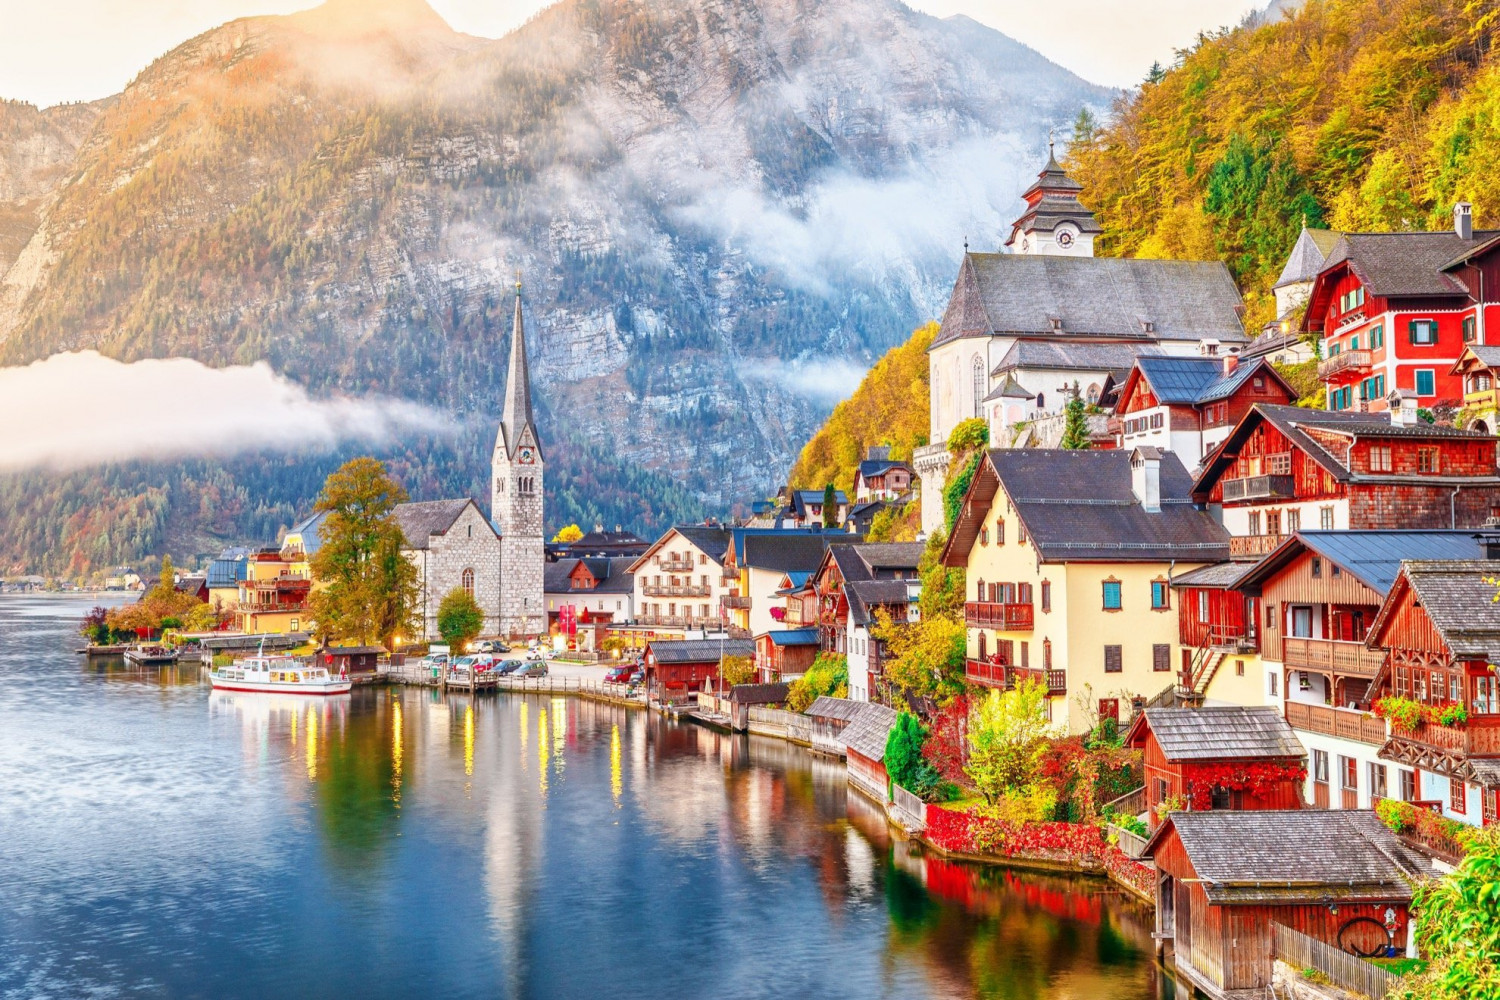 Hallstatt, ngôi làng cổ nổi tiếng của Áo, được mệnh danh là ngôi làng ven hồ đẹp nhất thế giới, từng bàn thảo về việc thu phí vào làng, nhưng rồi không tiến hành